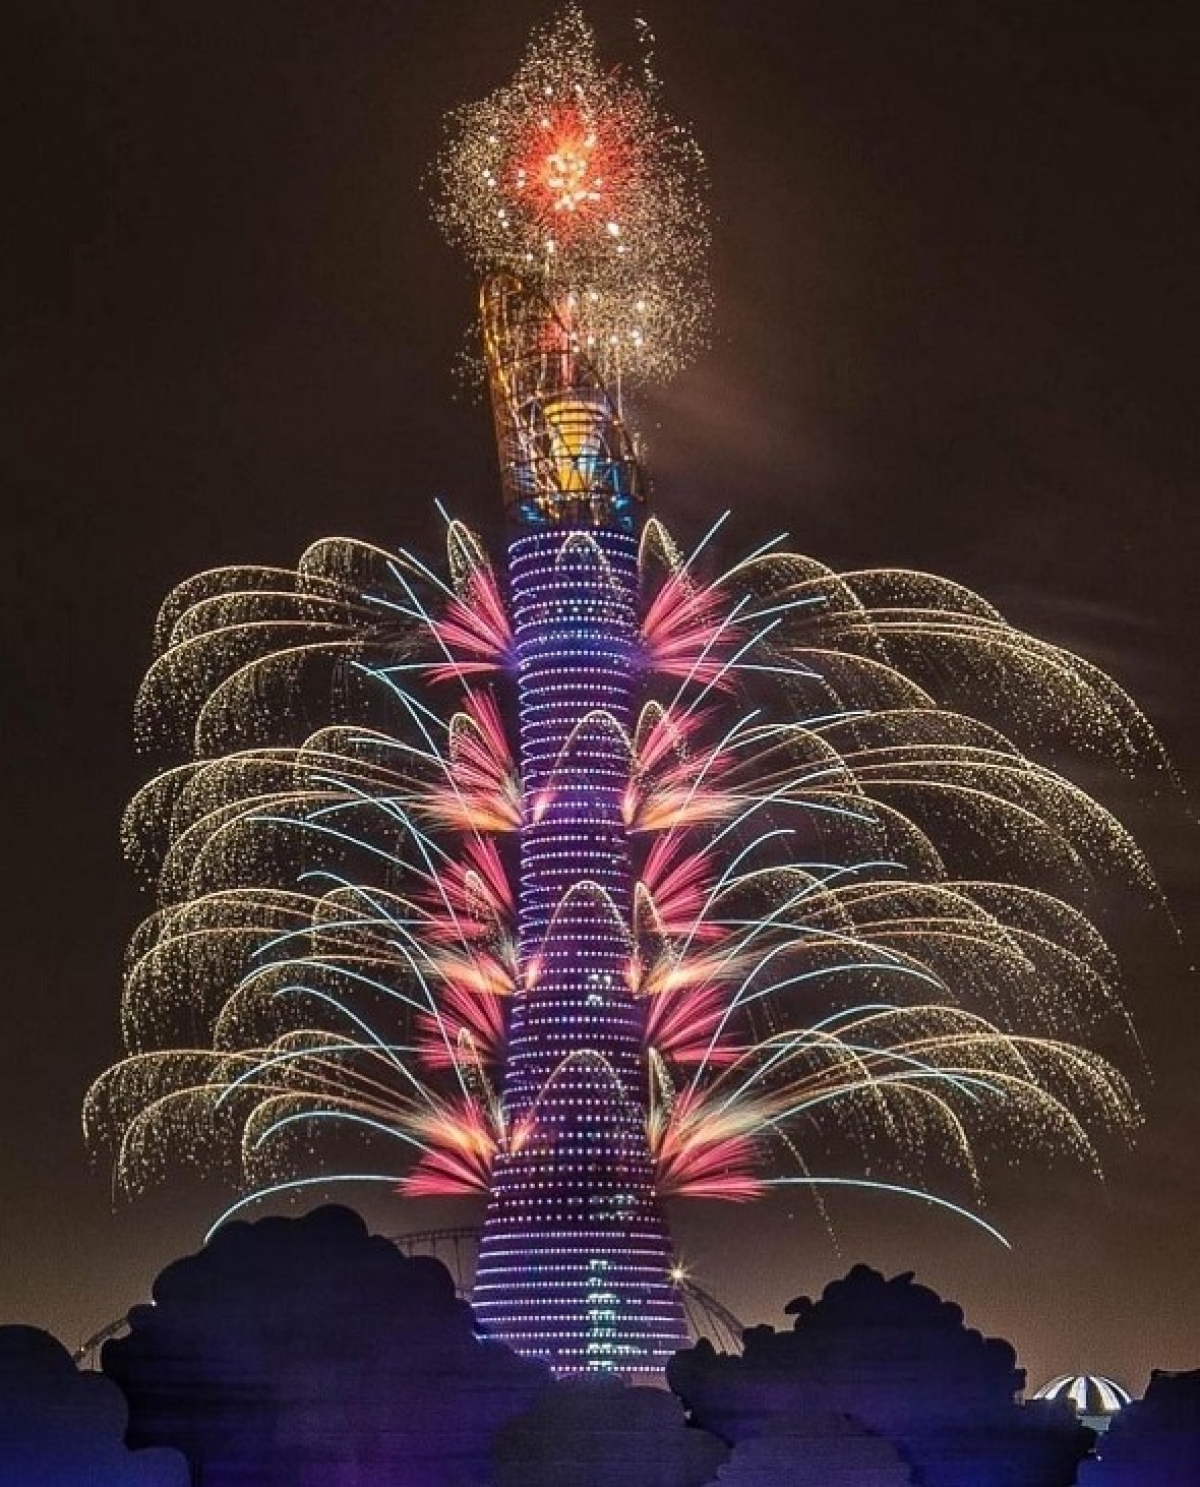 Tháp Aspire còn có tên gọi "Ngọn đuốc Doha", được xem là biểu tượng của thủ đô Qatar.